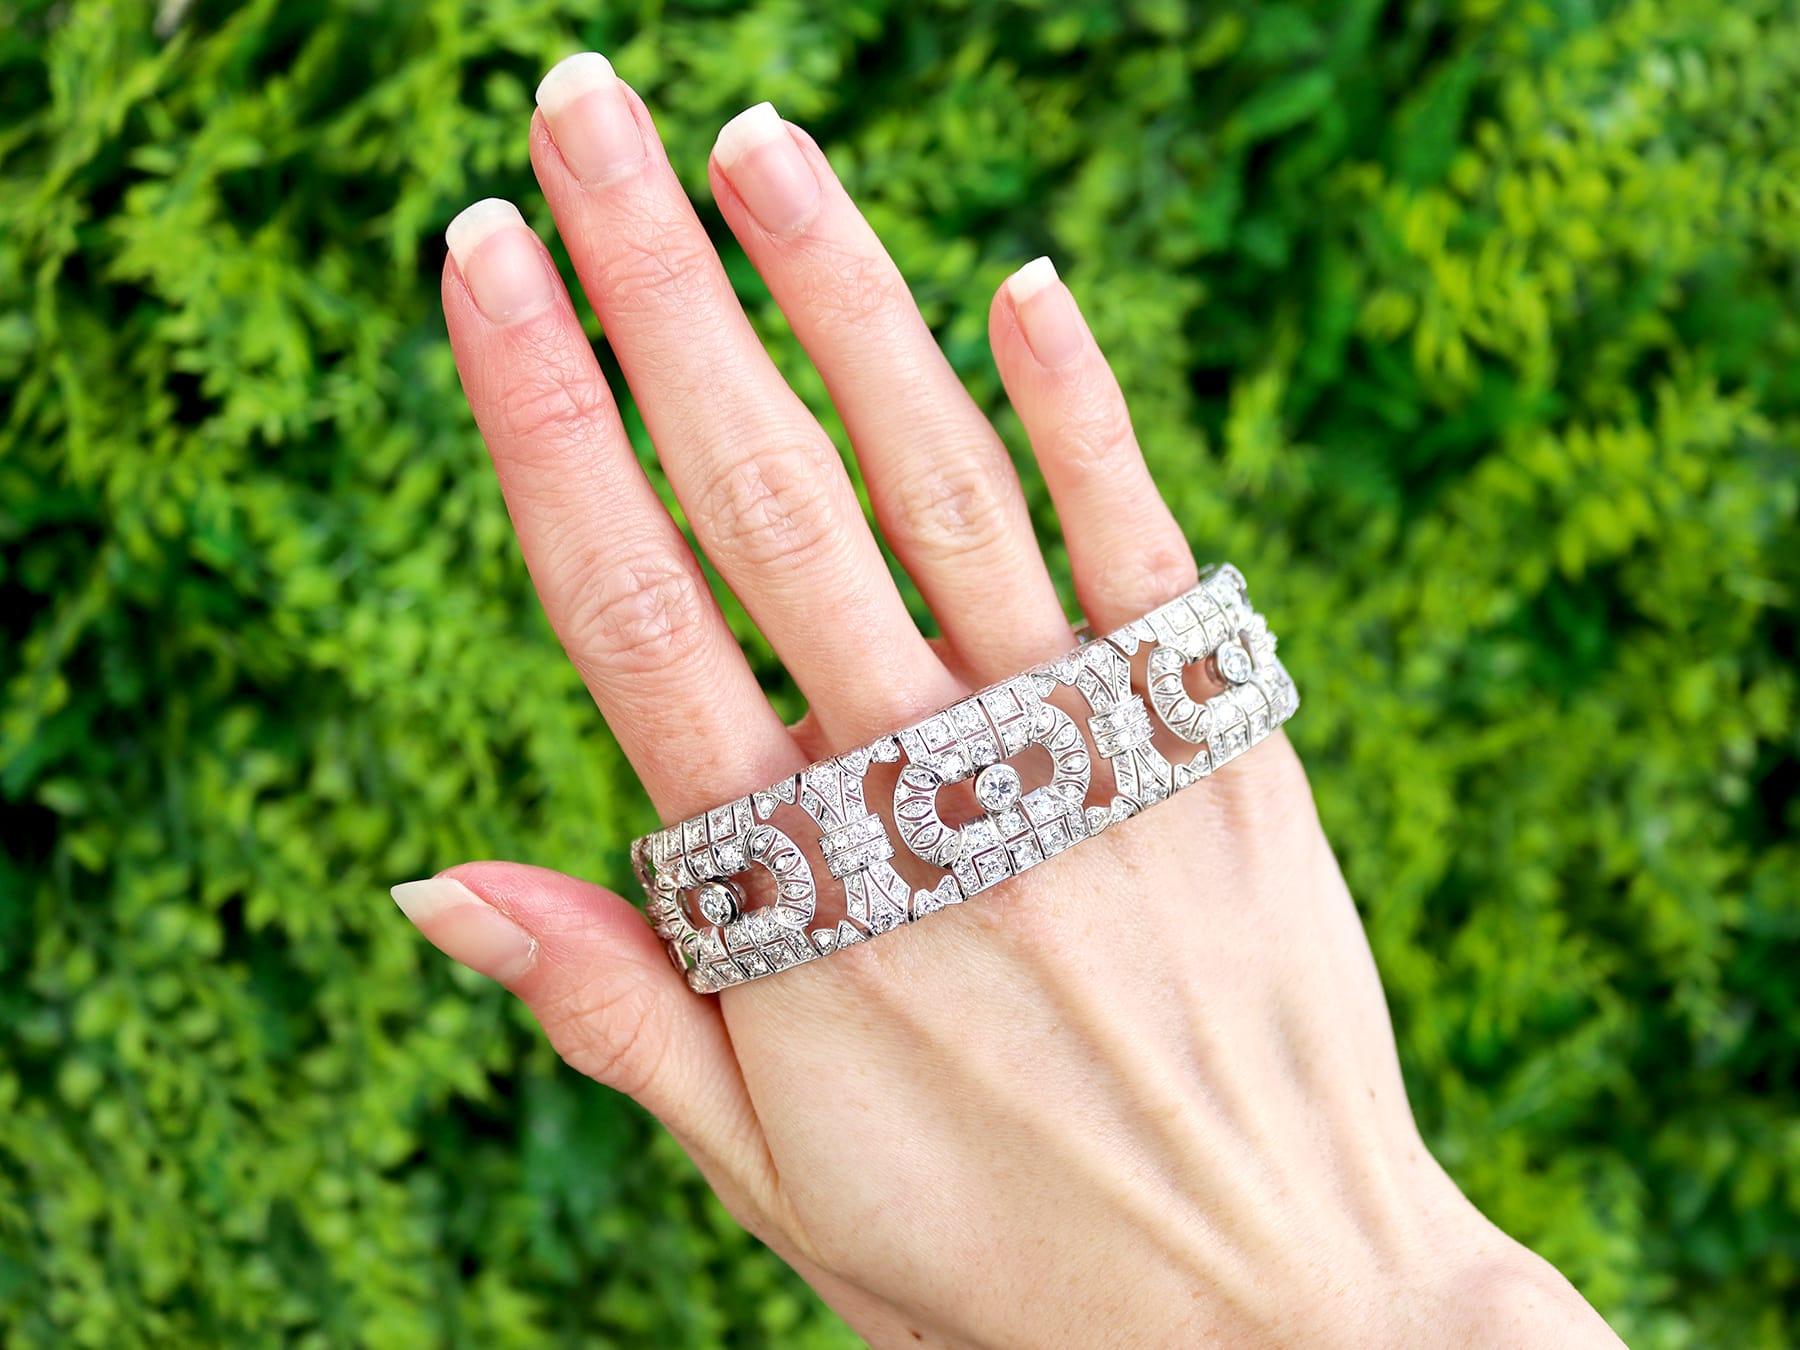 Eine atemberaubende, feine und beeindruckende antike 1920's 11,32 Karat Diamant und Platin Art Deco Armband; Teil unserer vielfältigen antiken Luxus-Diamant-Armband Sammlungen

Dieses atemberaubende, feine und beeindruckende antike Diamantarmband